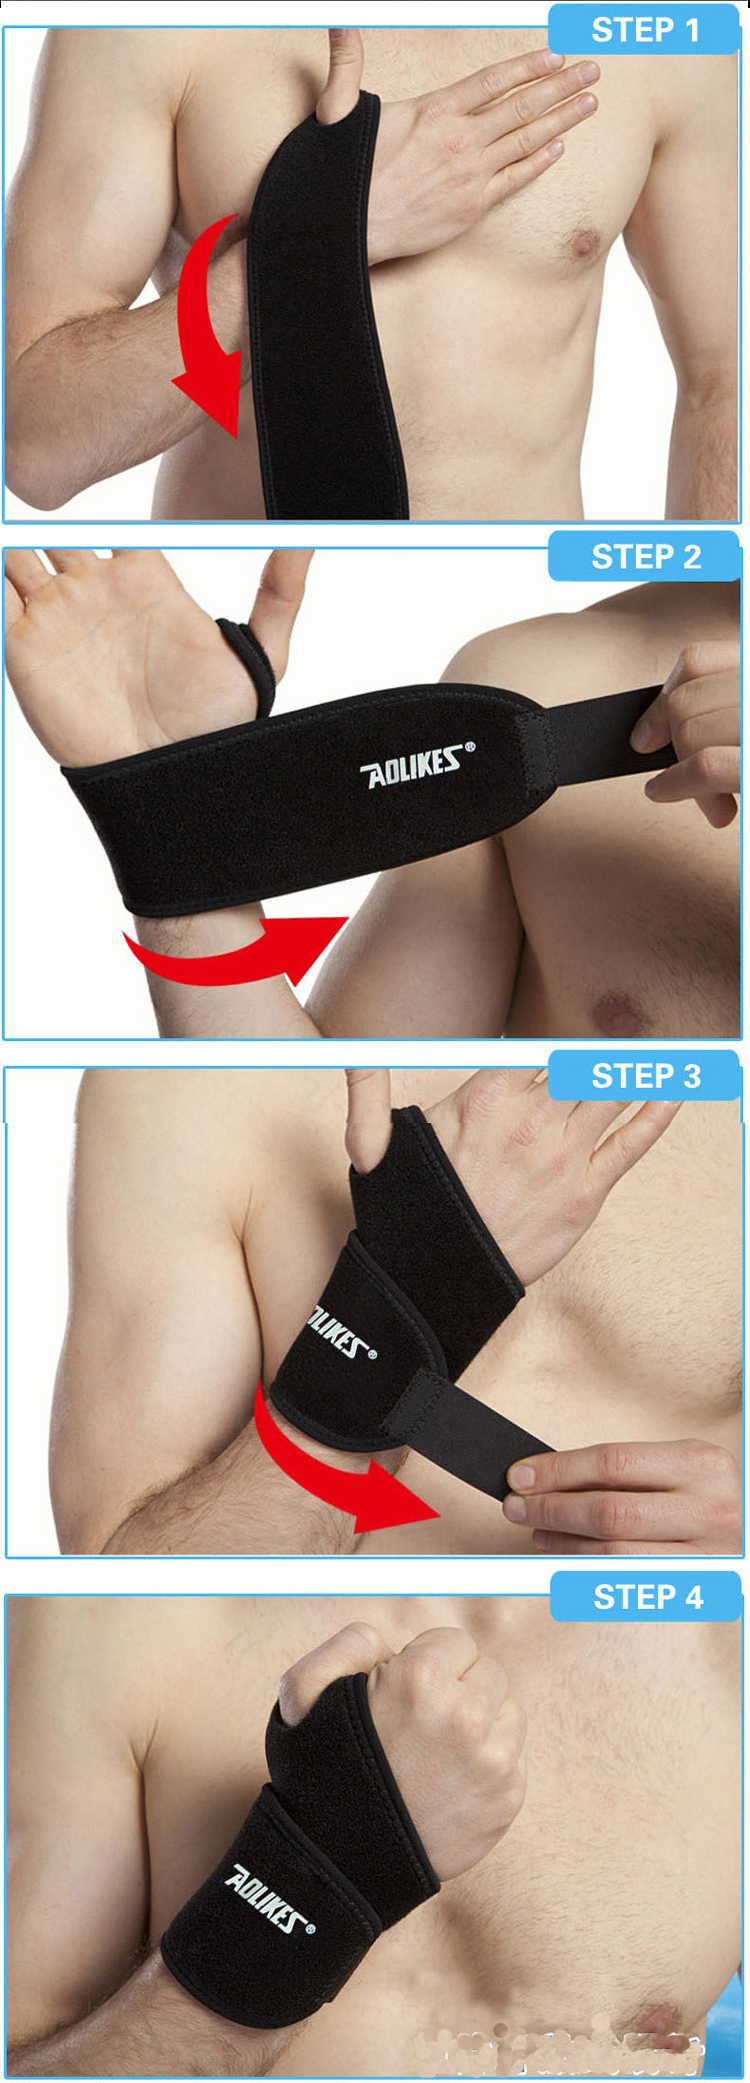 Găng tay thể hình bảo vệ cổ tay khi tập tạ, gym, bóng rổ AOLIKES (1 Đôi)